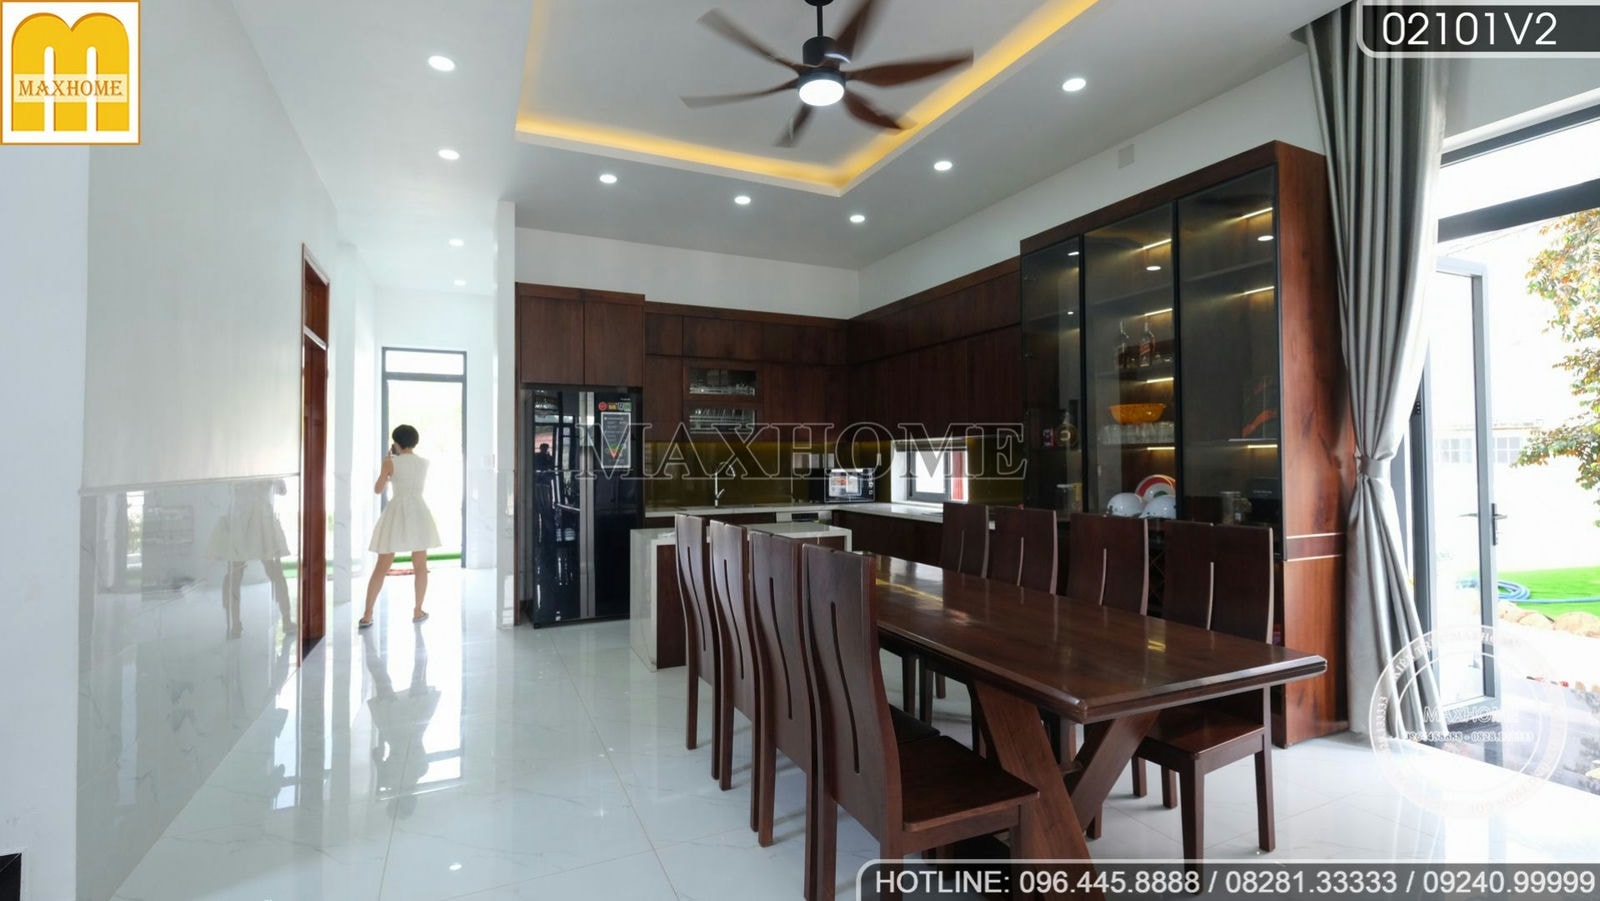 Maxhome hoàn thiện bộ nội thất hiện đại và sang trọng tại Tây Ninh